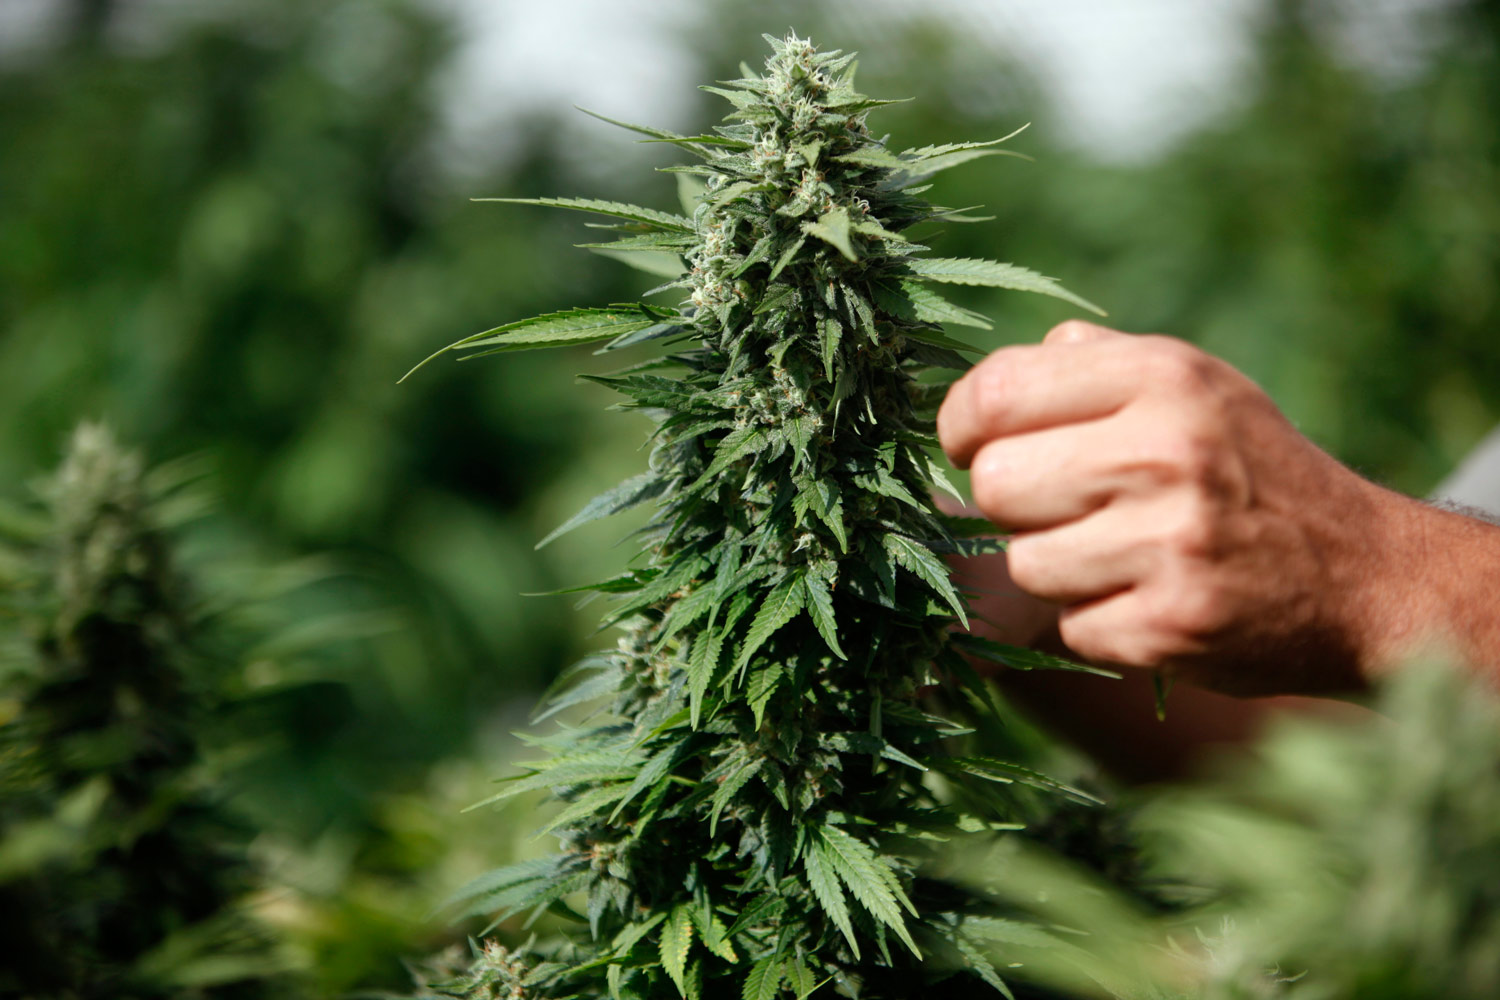  Cannabis, uso medico va separato da legalizzazione: gli effetti ancora poco noti